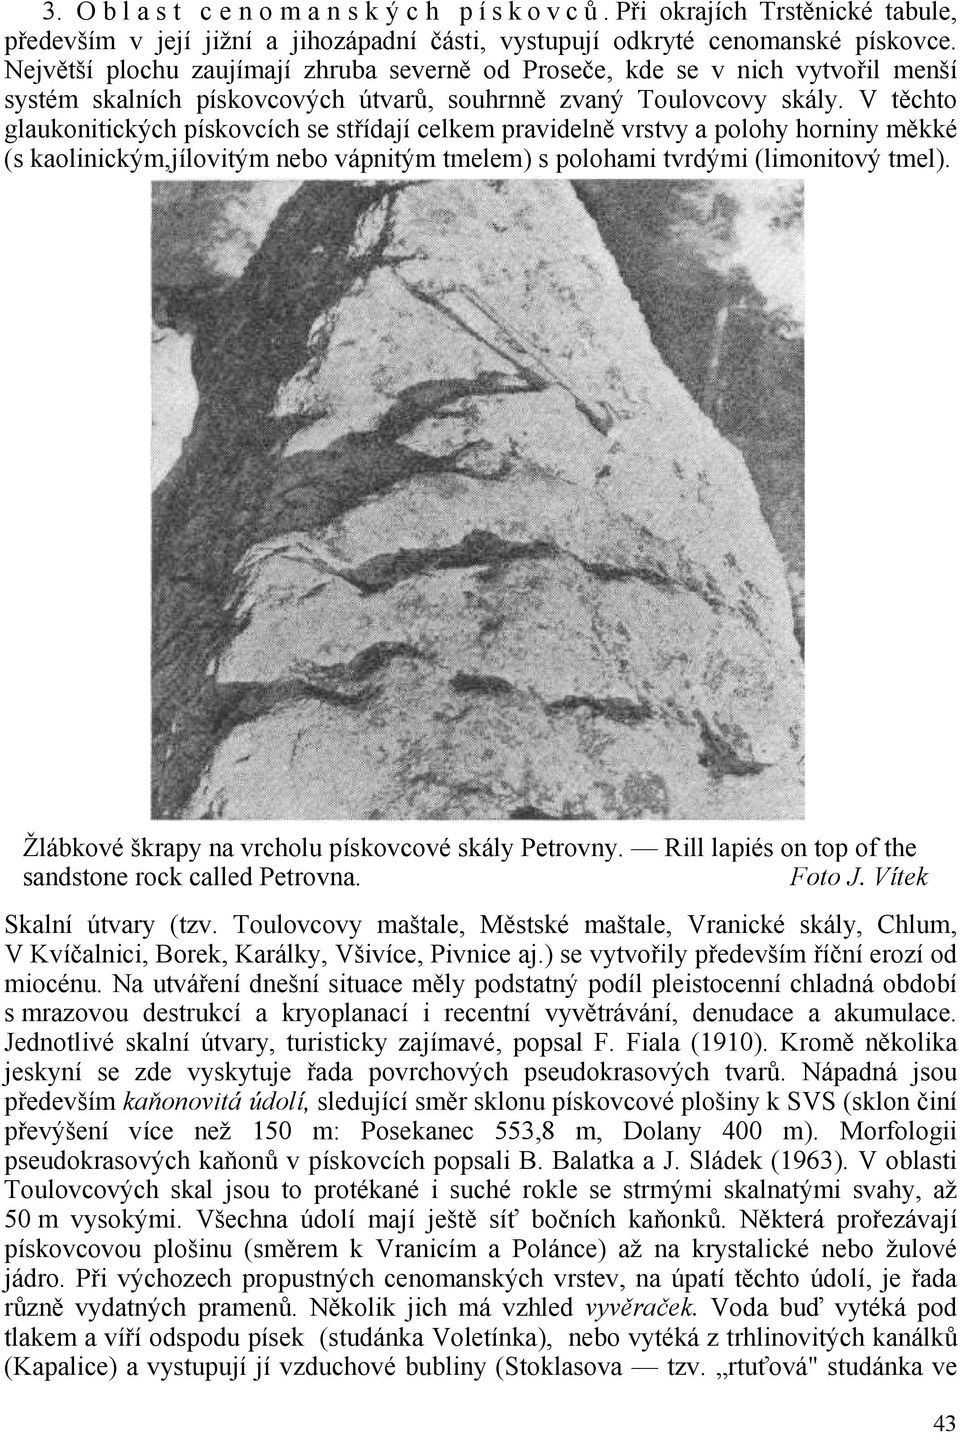 V těchto glaukonitických pískovcích se střídají celkem pravidelně vrstvy a polohy horniny měkké (s kaolinickým,jílovitým nebo vápnitým tmelem) s polohami tvrdými (limonitový tmel).